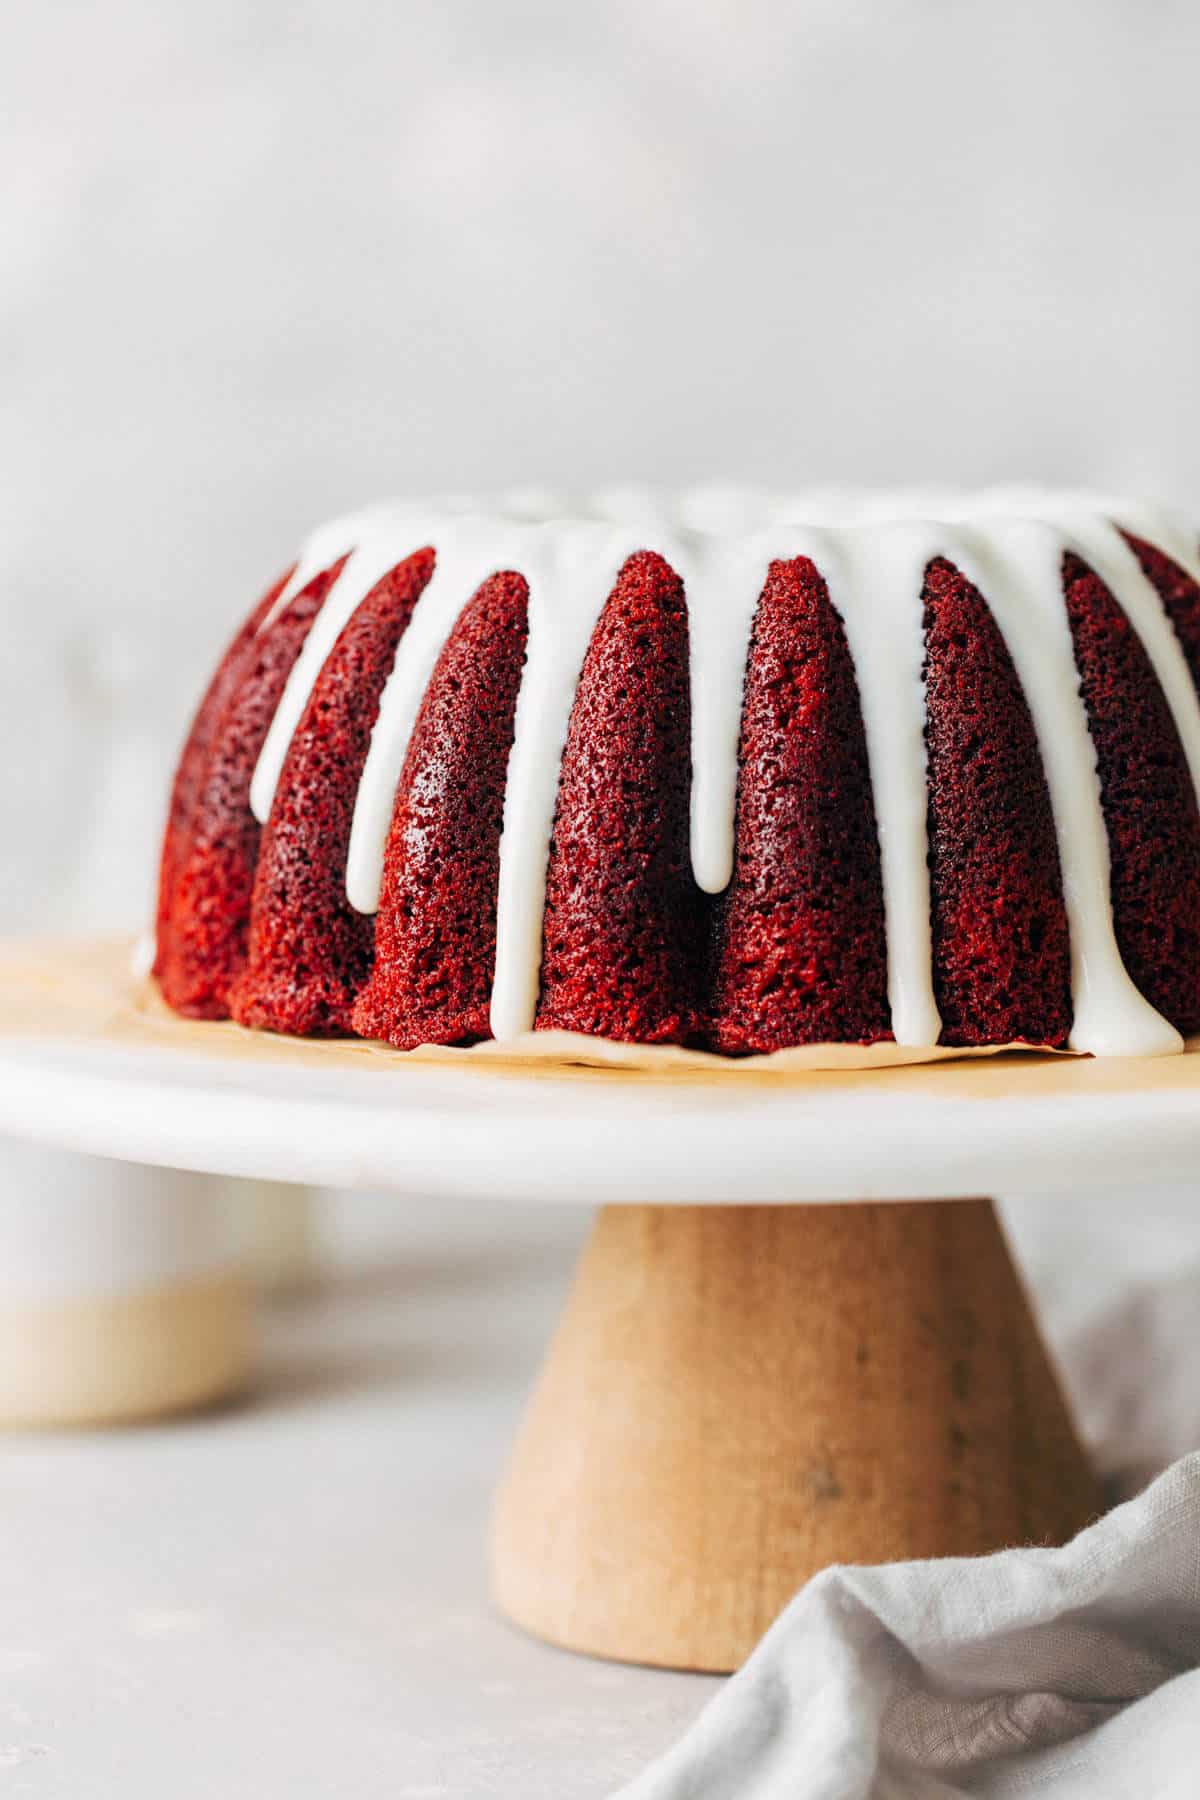 https://butternutbakeryblog.com/wp-content/uploads/2019/02/red-velvet-bundt-cake-1.jpg